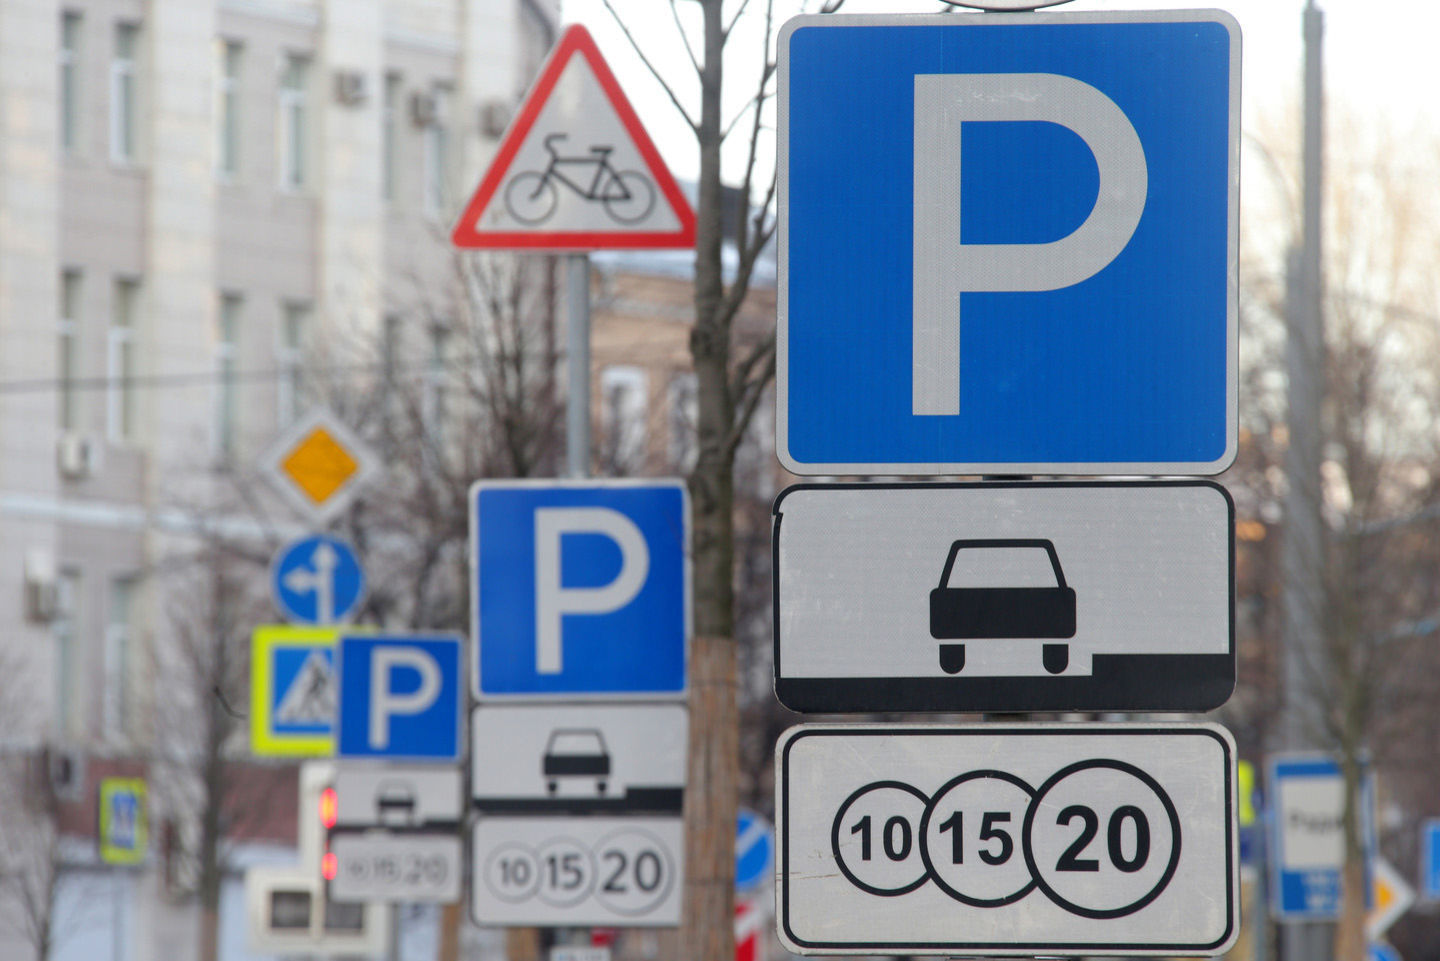 40 гривень коштуватиме власникові приватного автотранспорту година паркування у центральній частині Львова.